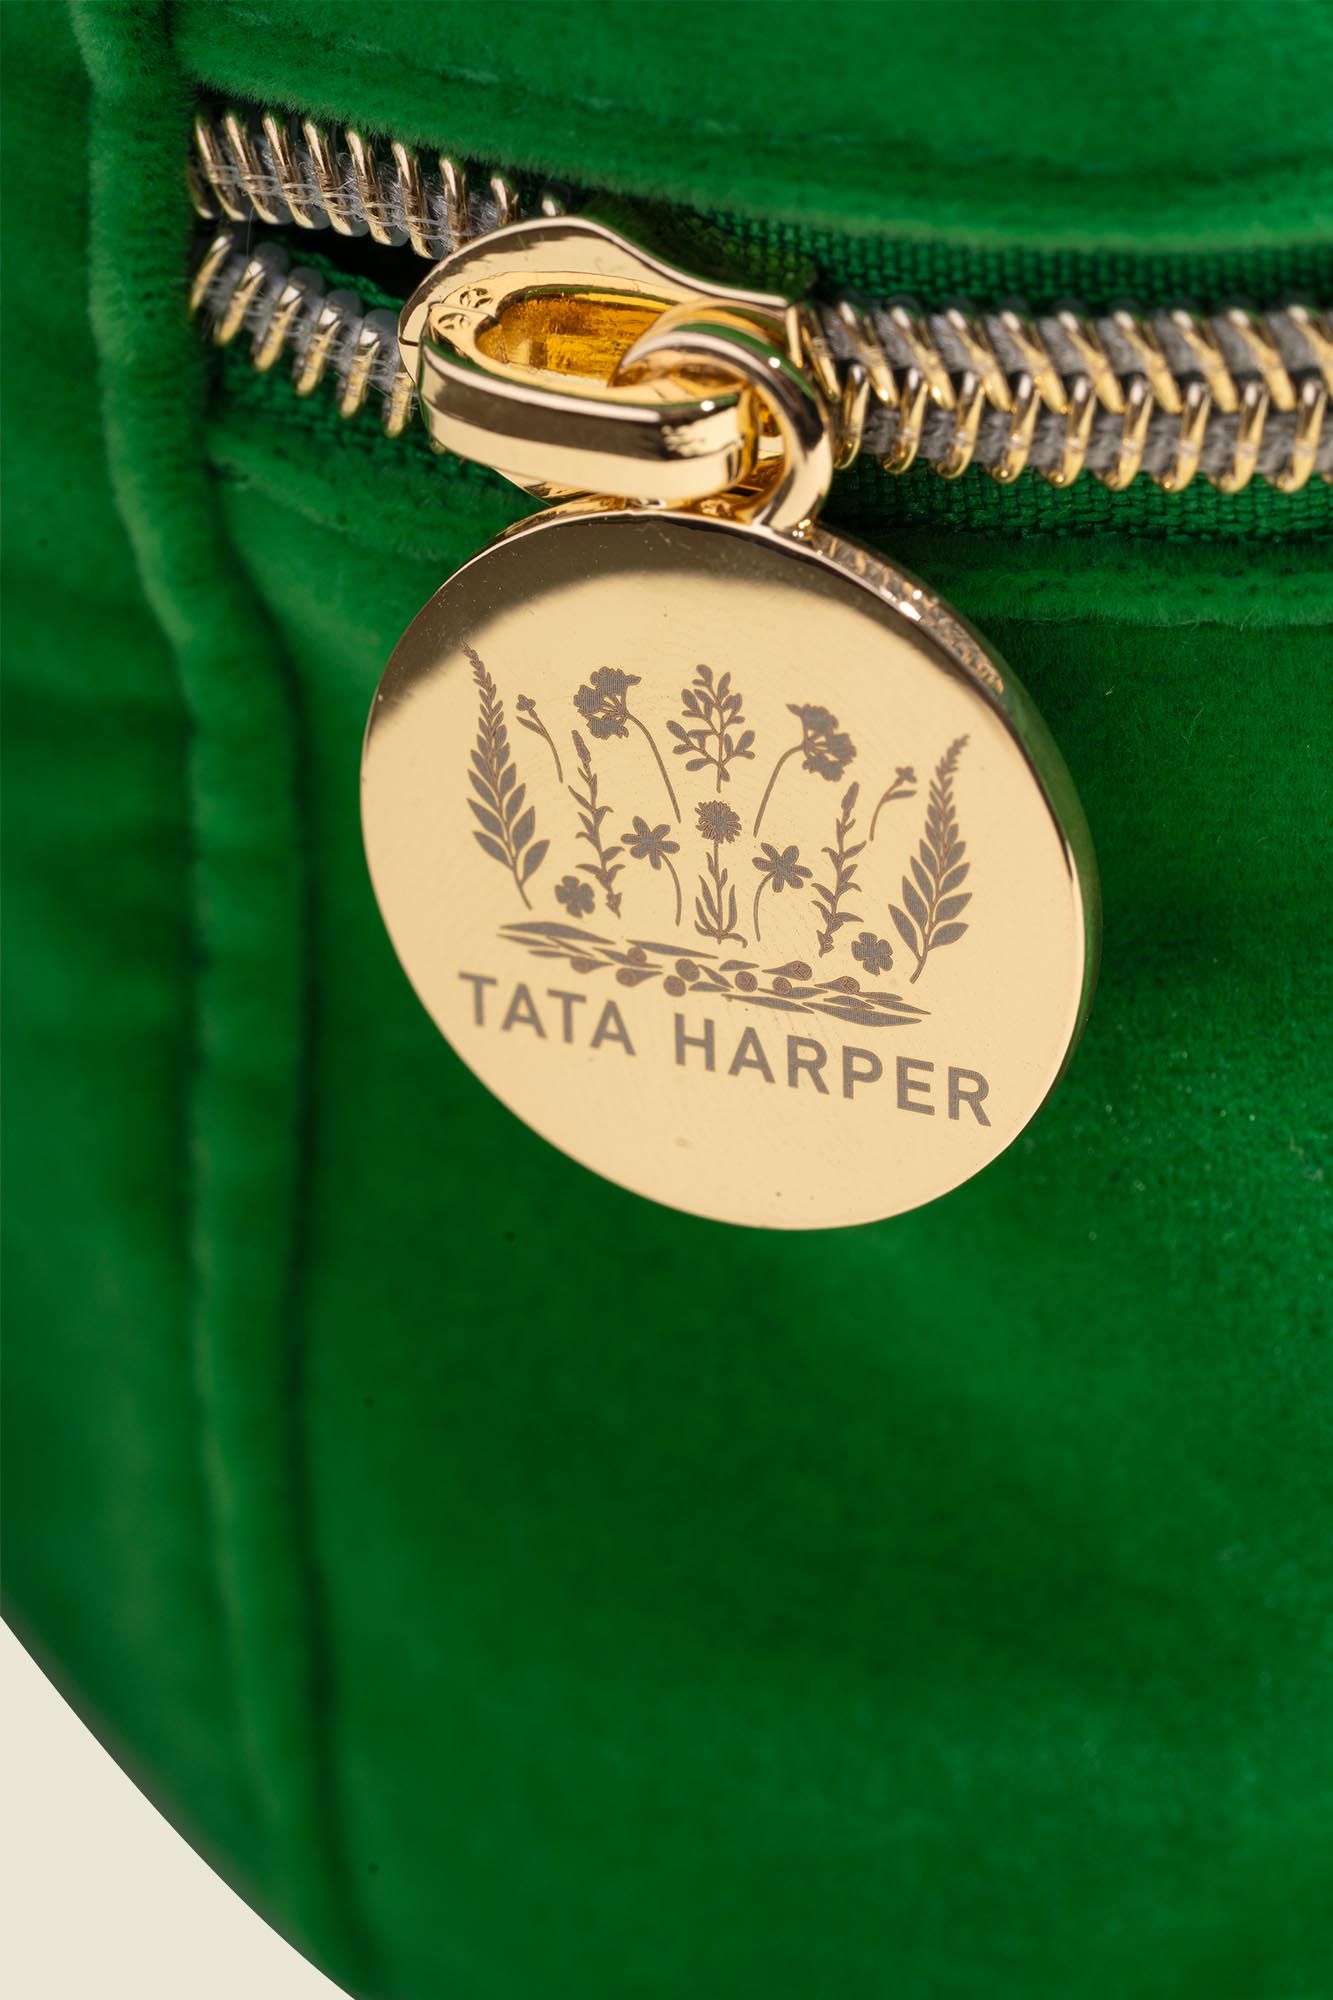 Tata Harper